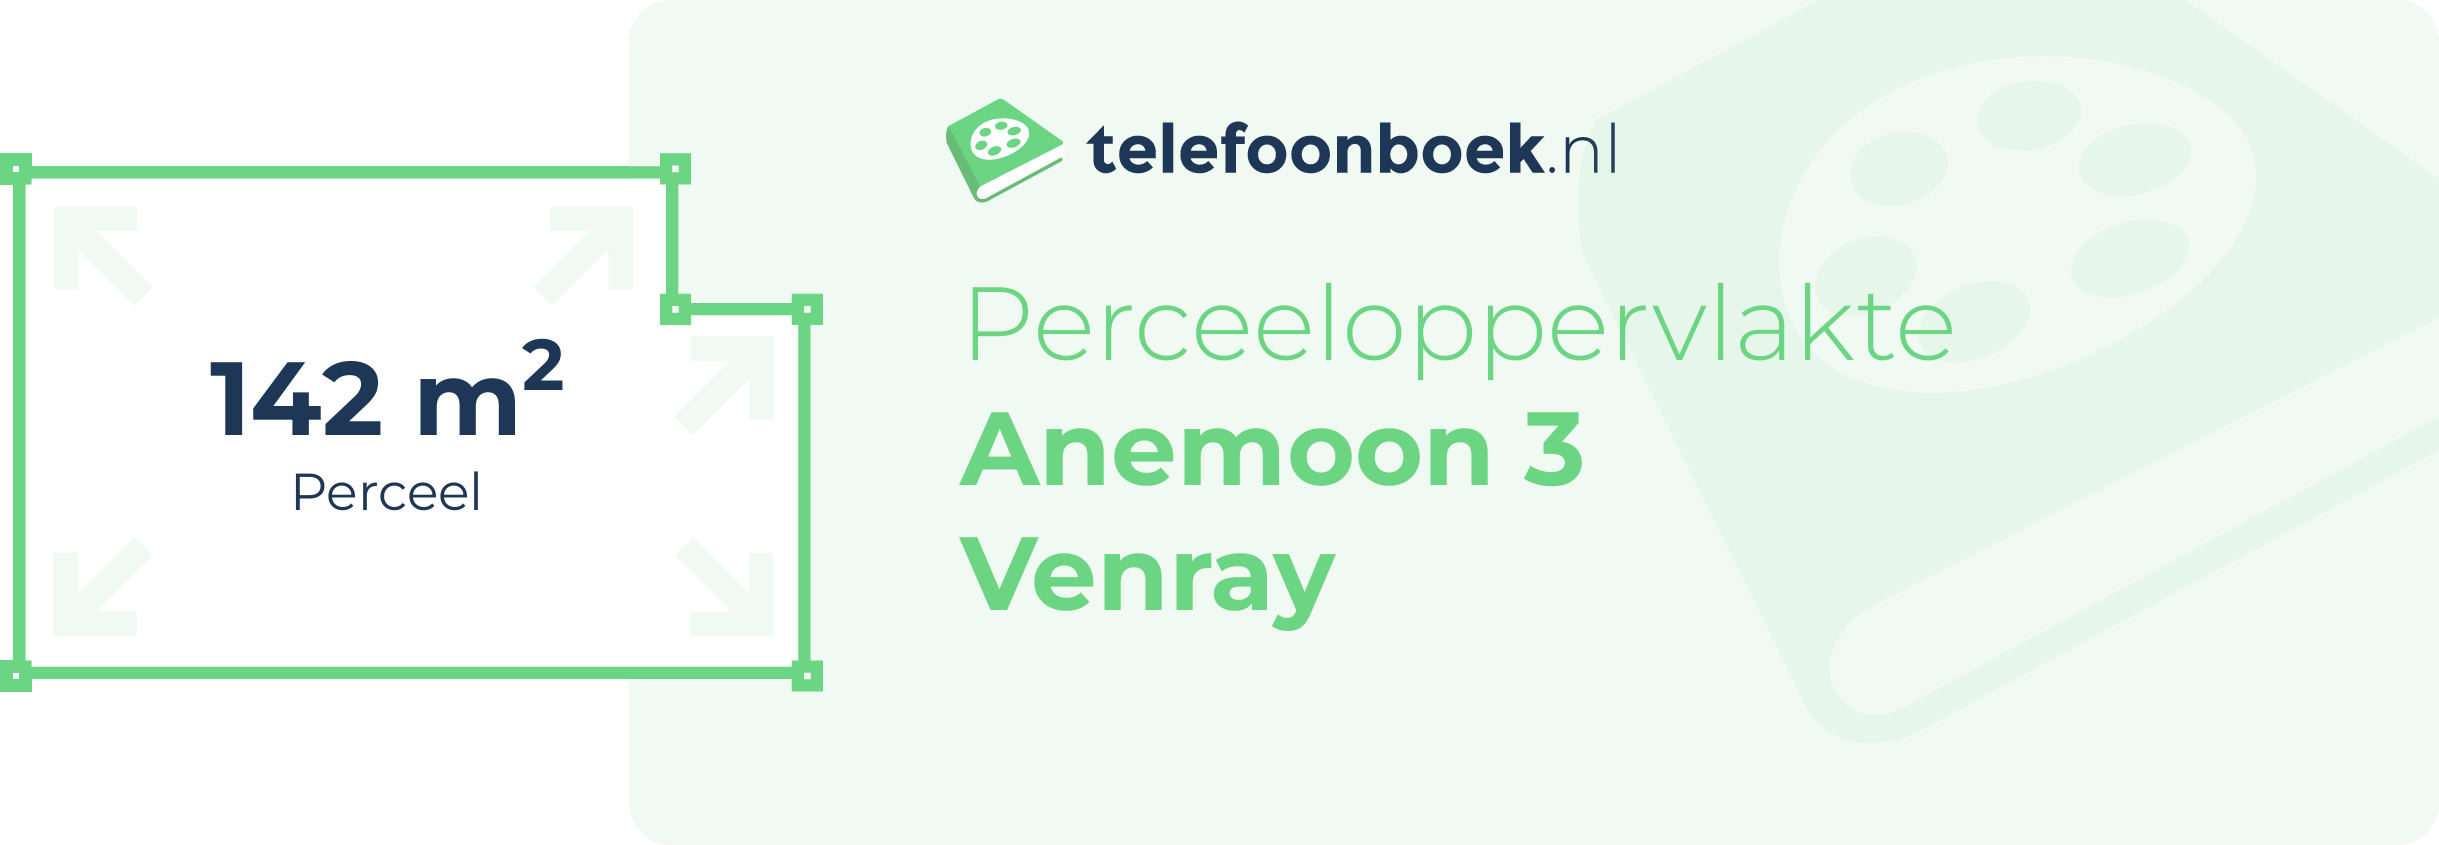 Perceeloppervlakte Anemoon 3 Venray